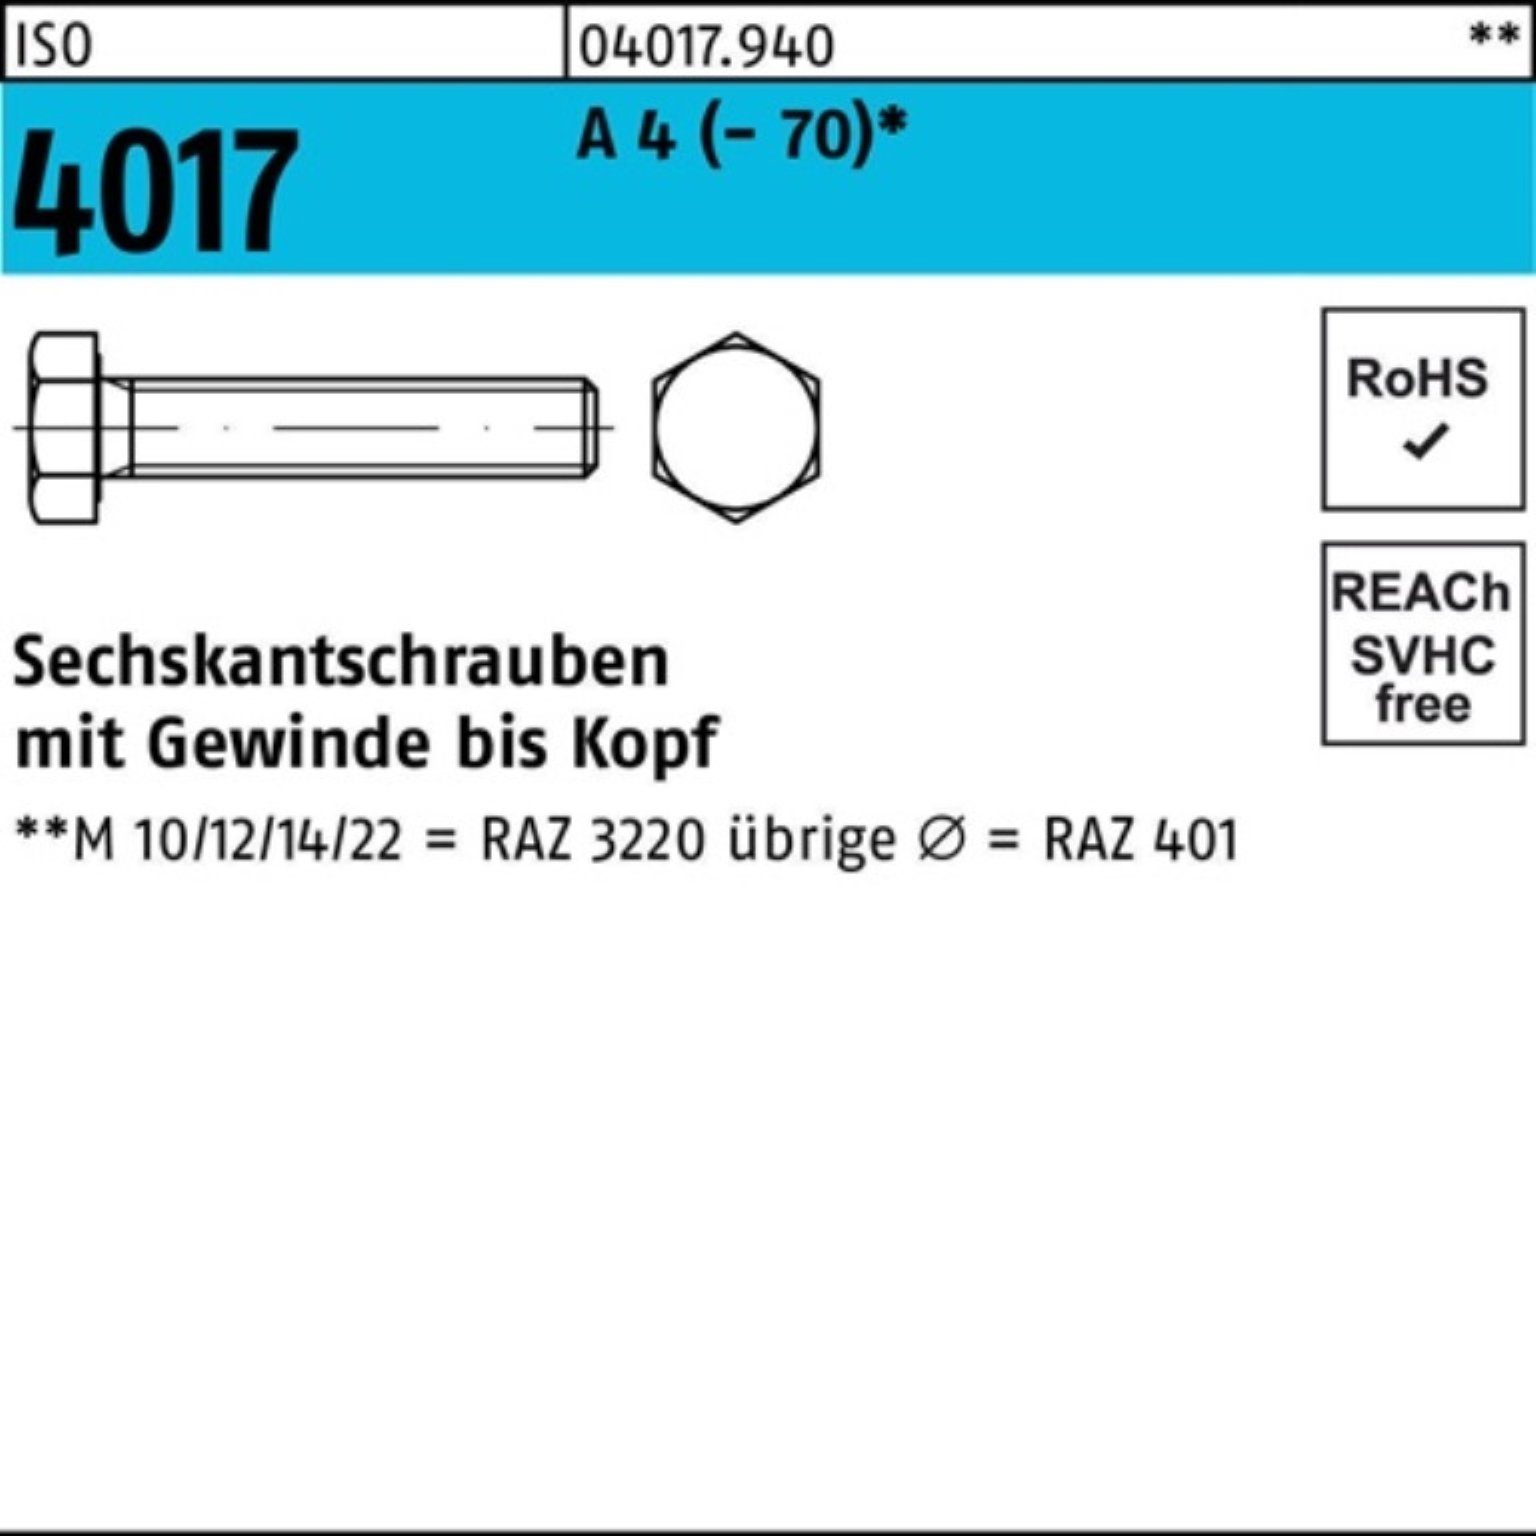 Bufab Sechskantschraube 500er Pack Sechskantschraube ISO 4017 VG M6x 10 A 4 (70) 500 Stück